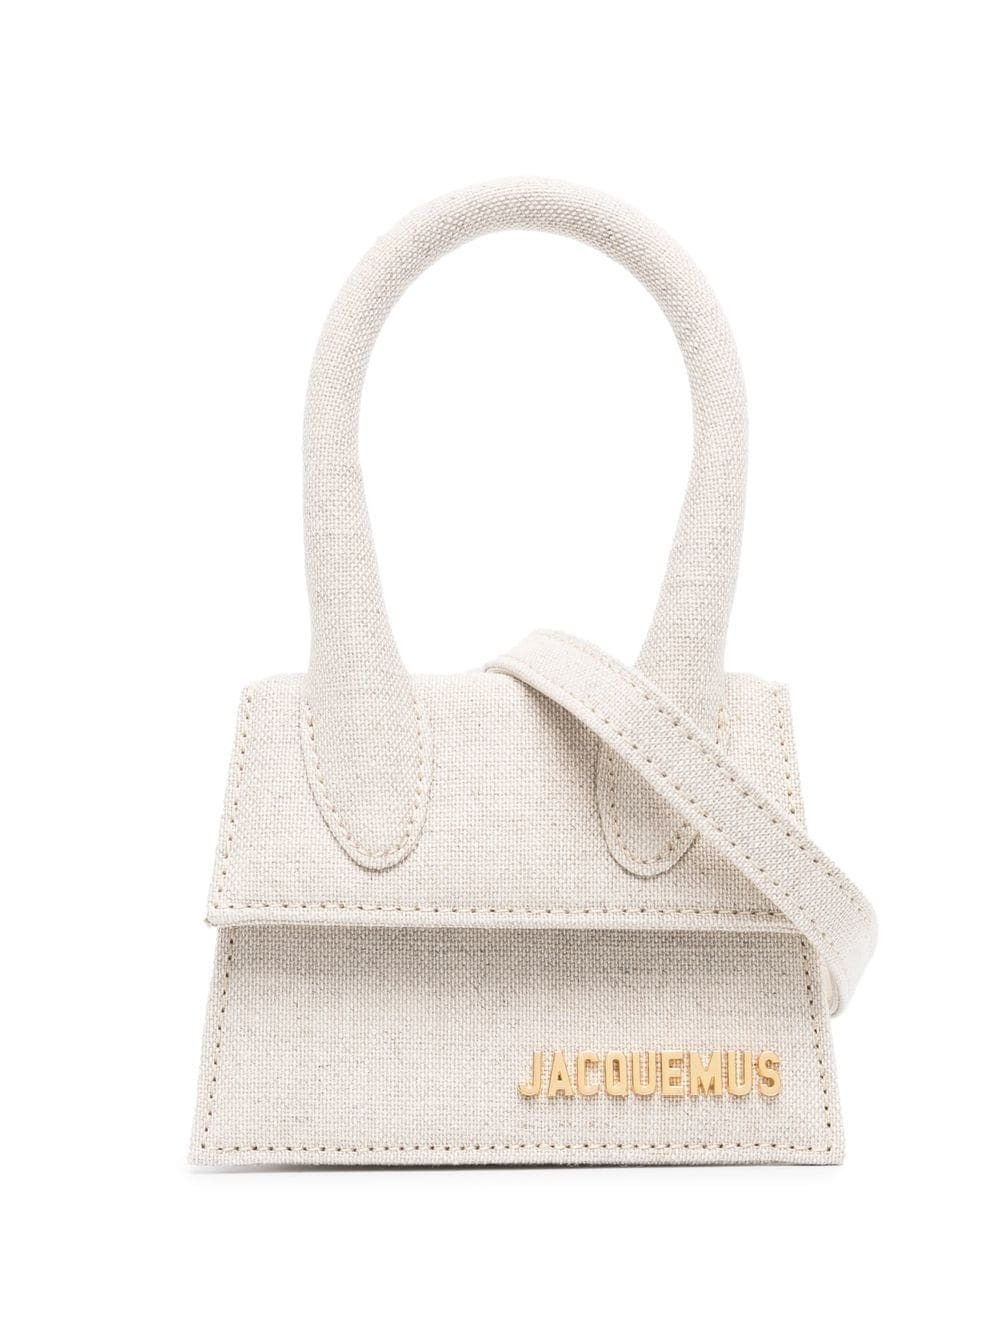 JACQUEMUS - Le Chiquito Mini Bag Jacquemus